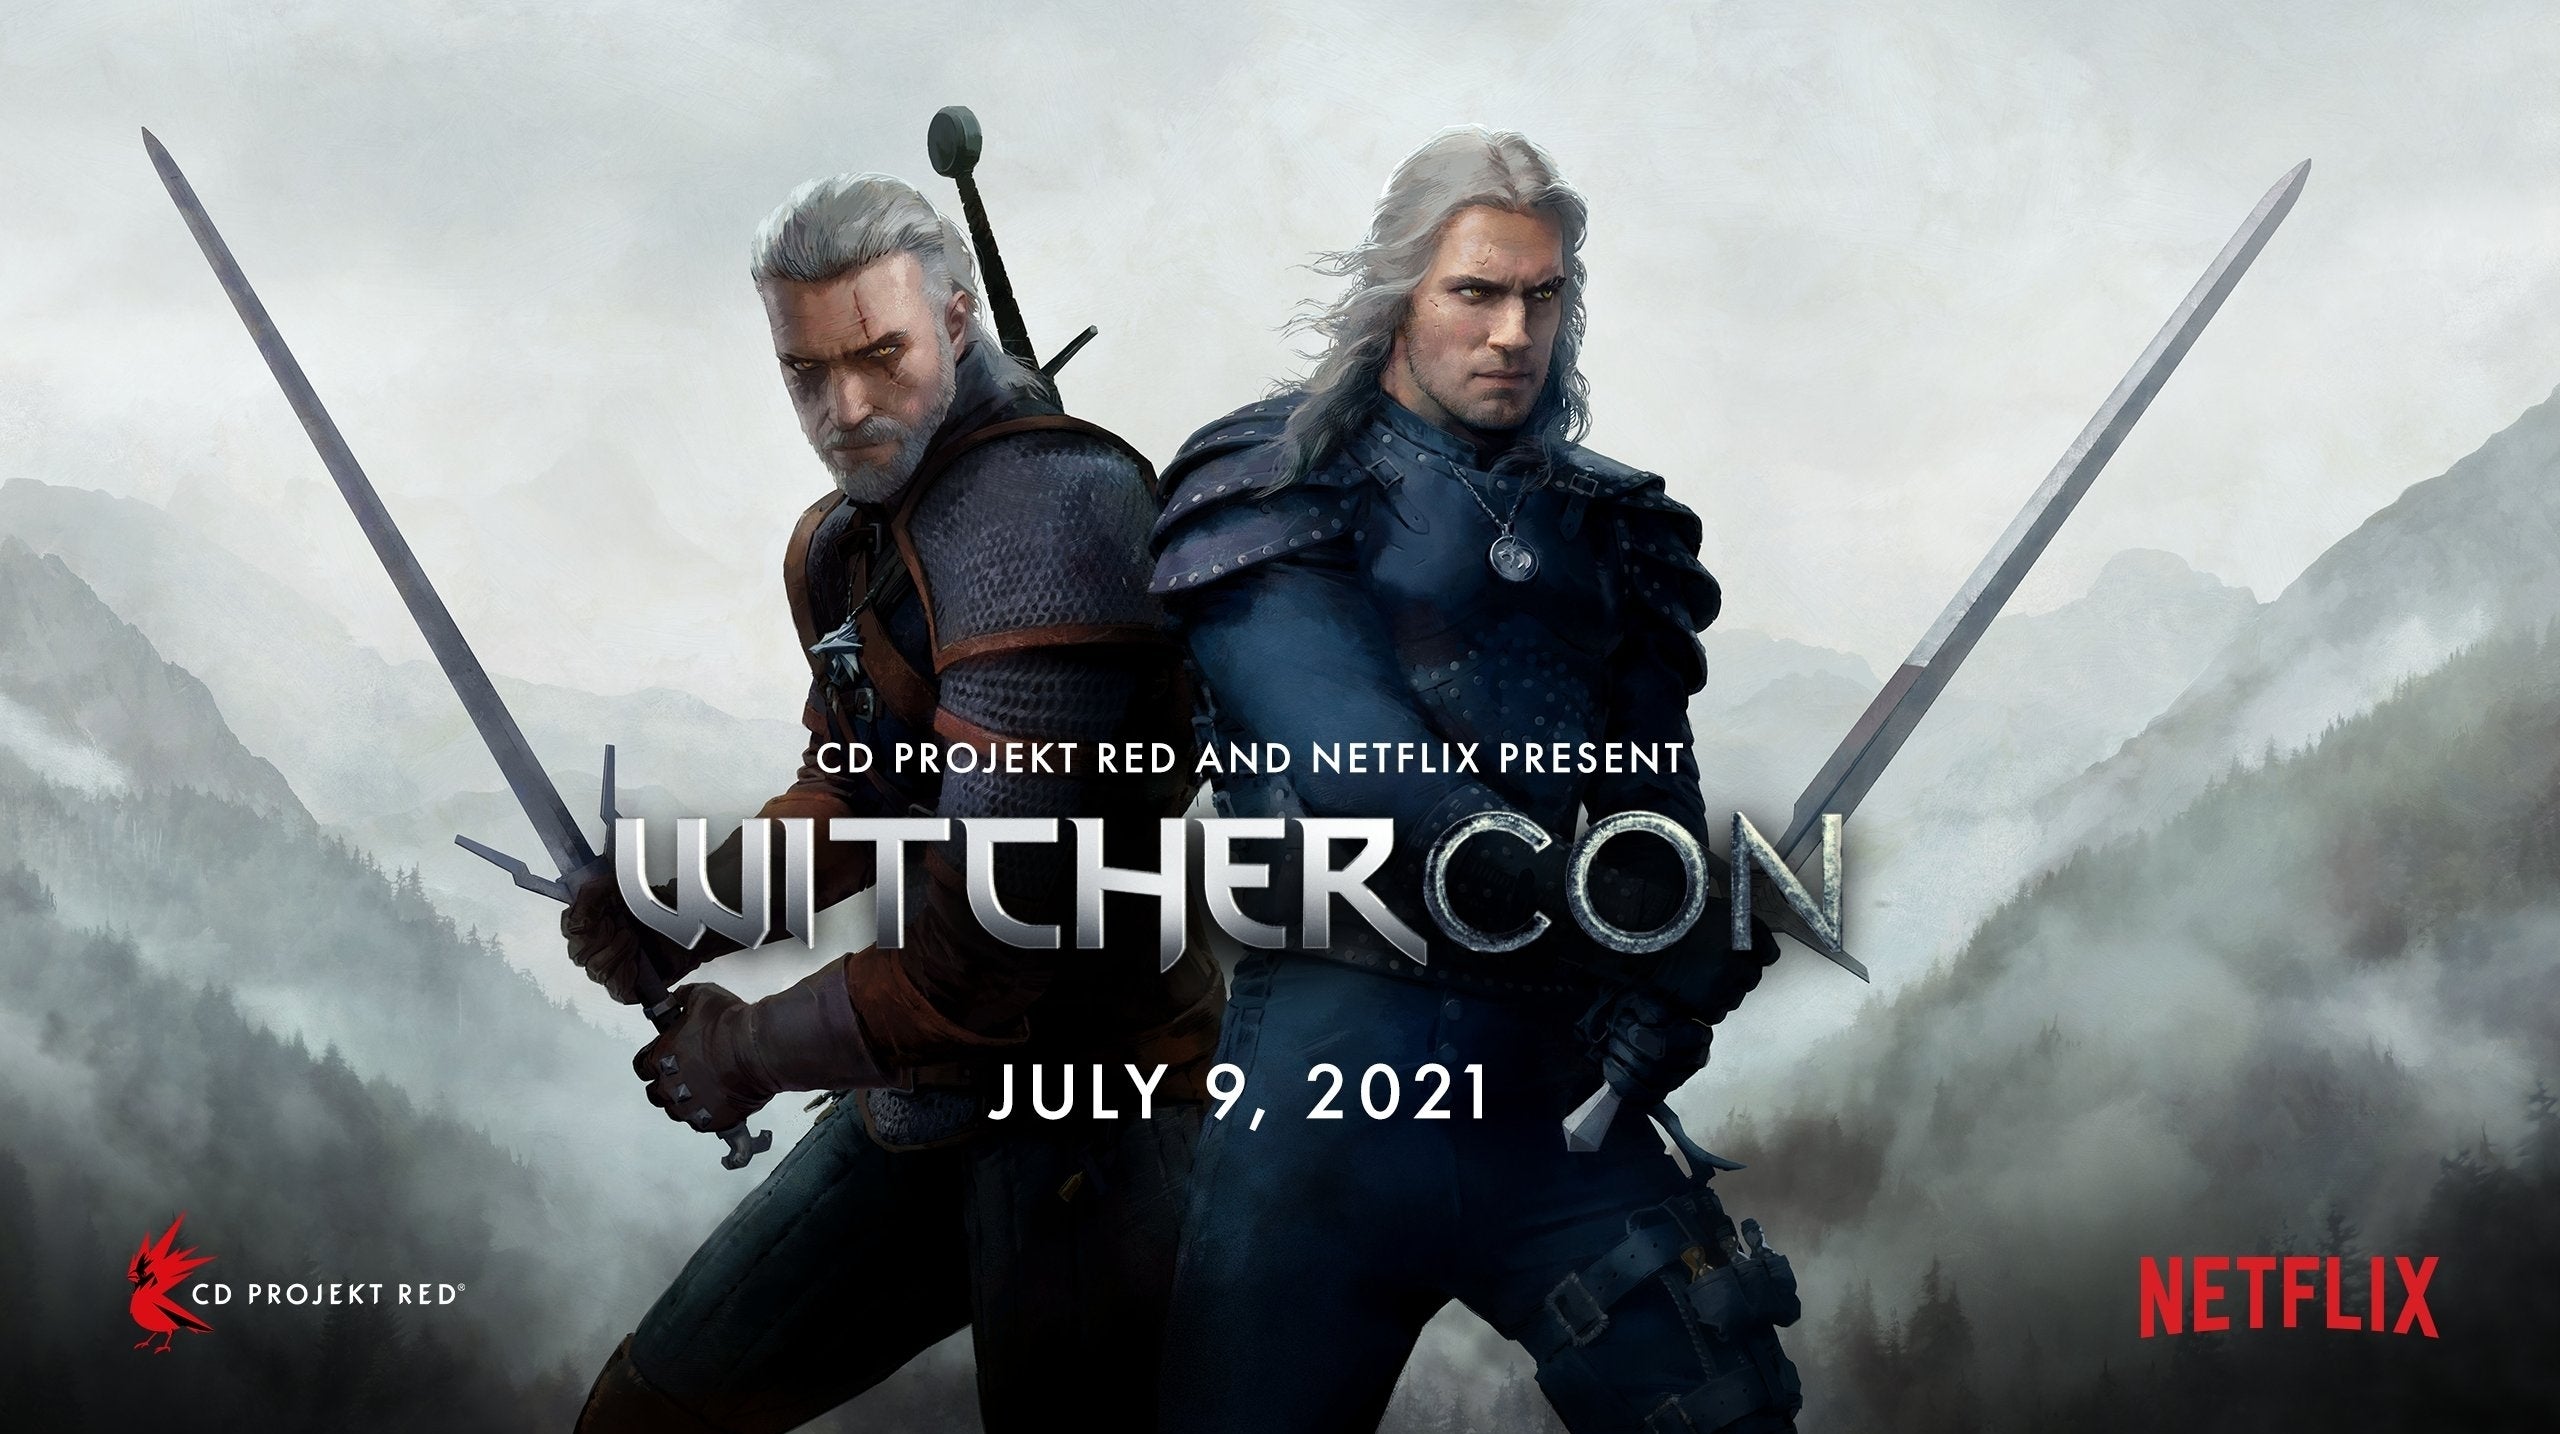 Imagen para CDPR y Netflix anuncian la WitcherCon para julio